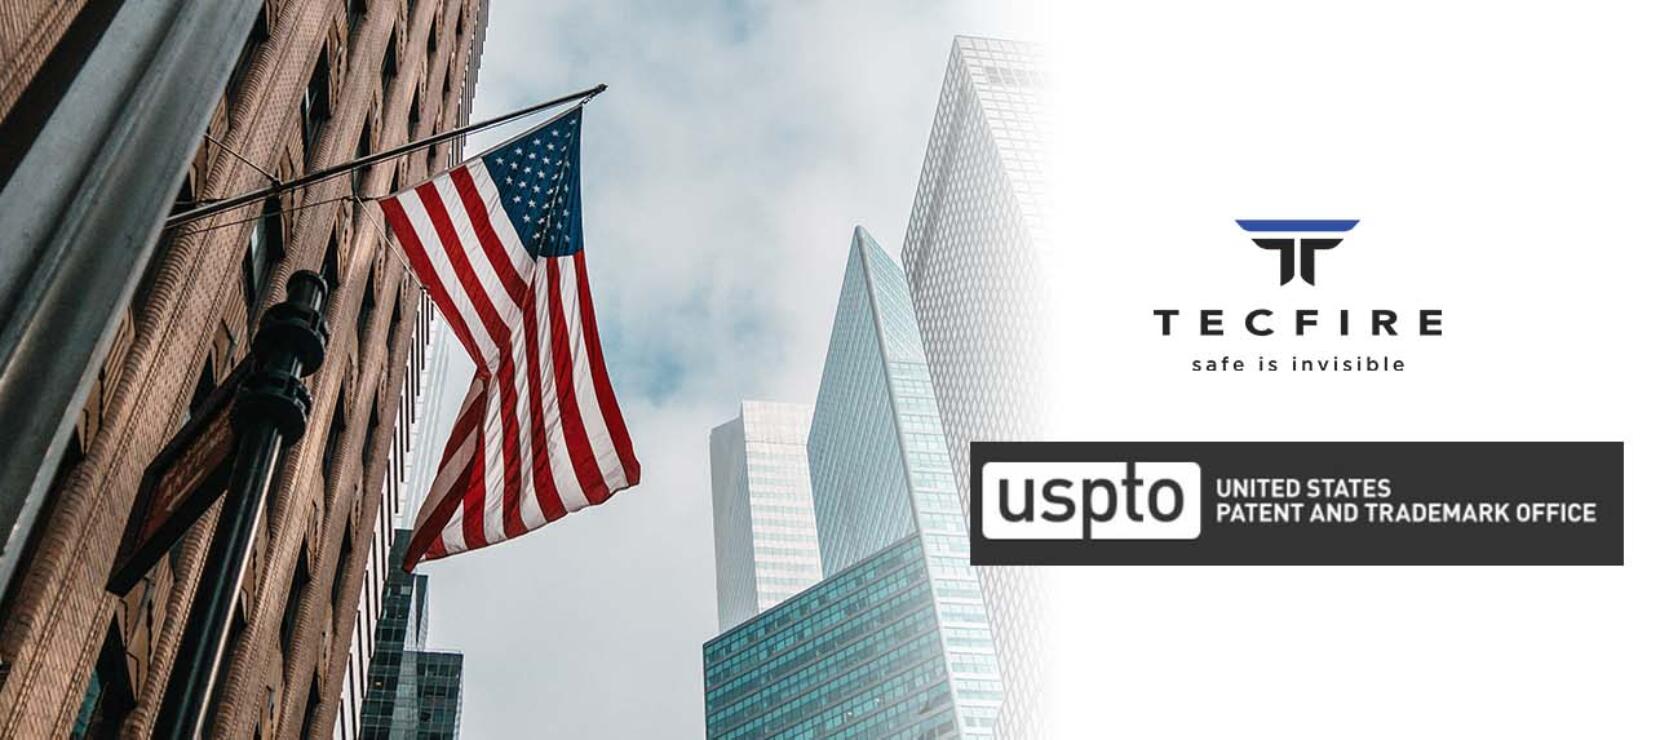 Tecfire ha registrado con éxito su marca en la USPTO